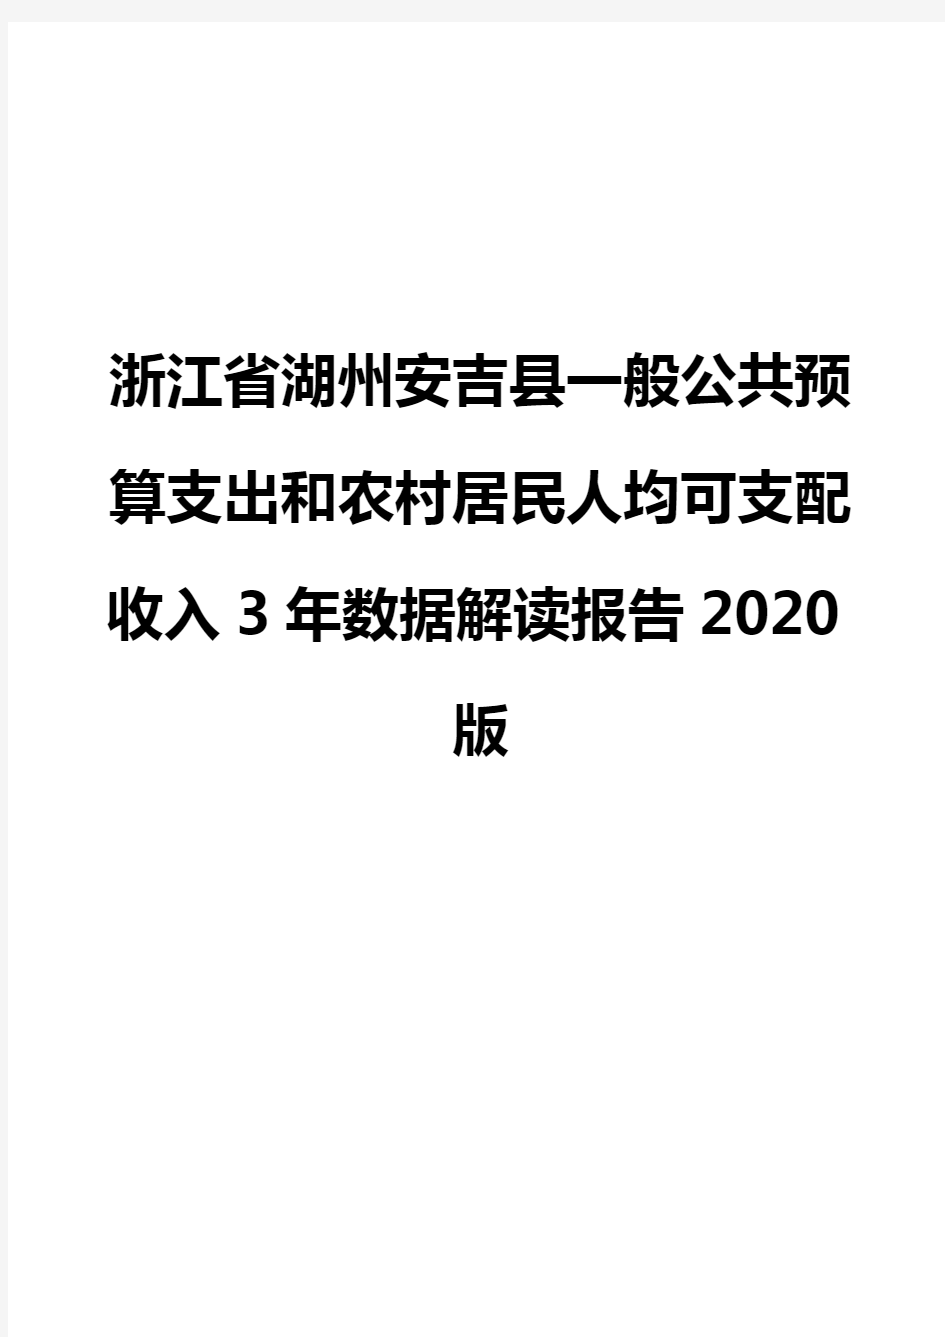 浙江省湖州安吉县一般公共预算支出和农村居民人均可支配收入3年数据解读报告2020版